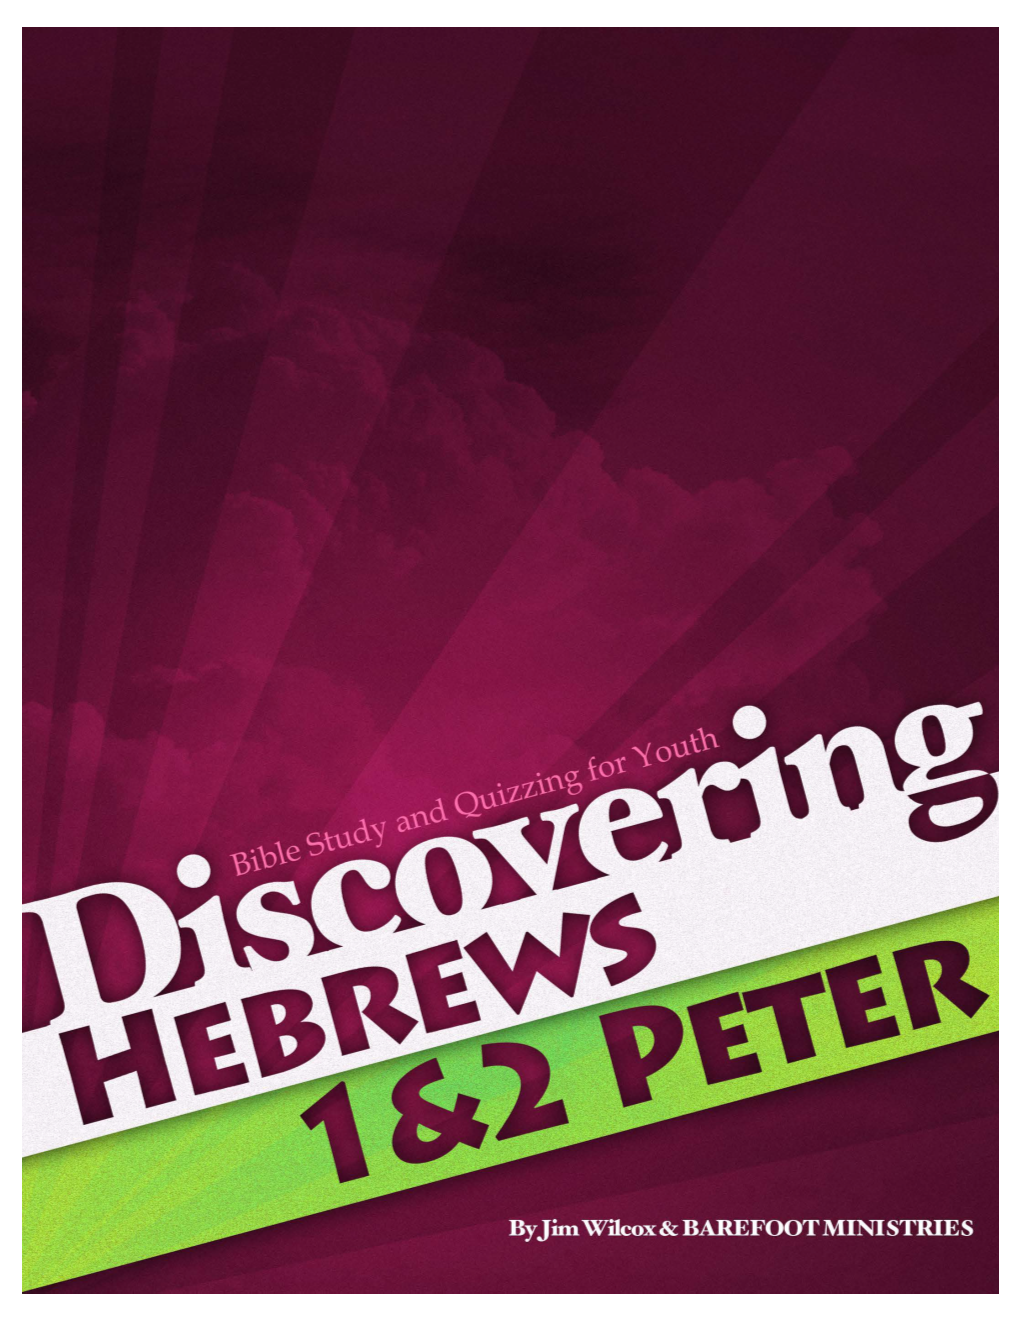 Hebrews 1&2 Peter